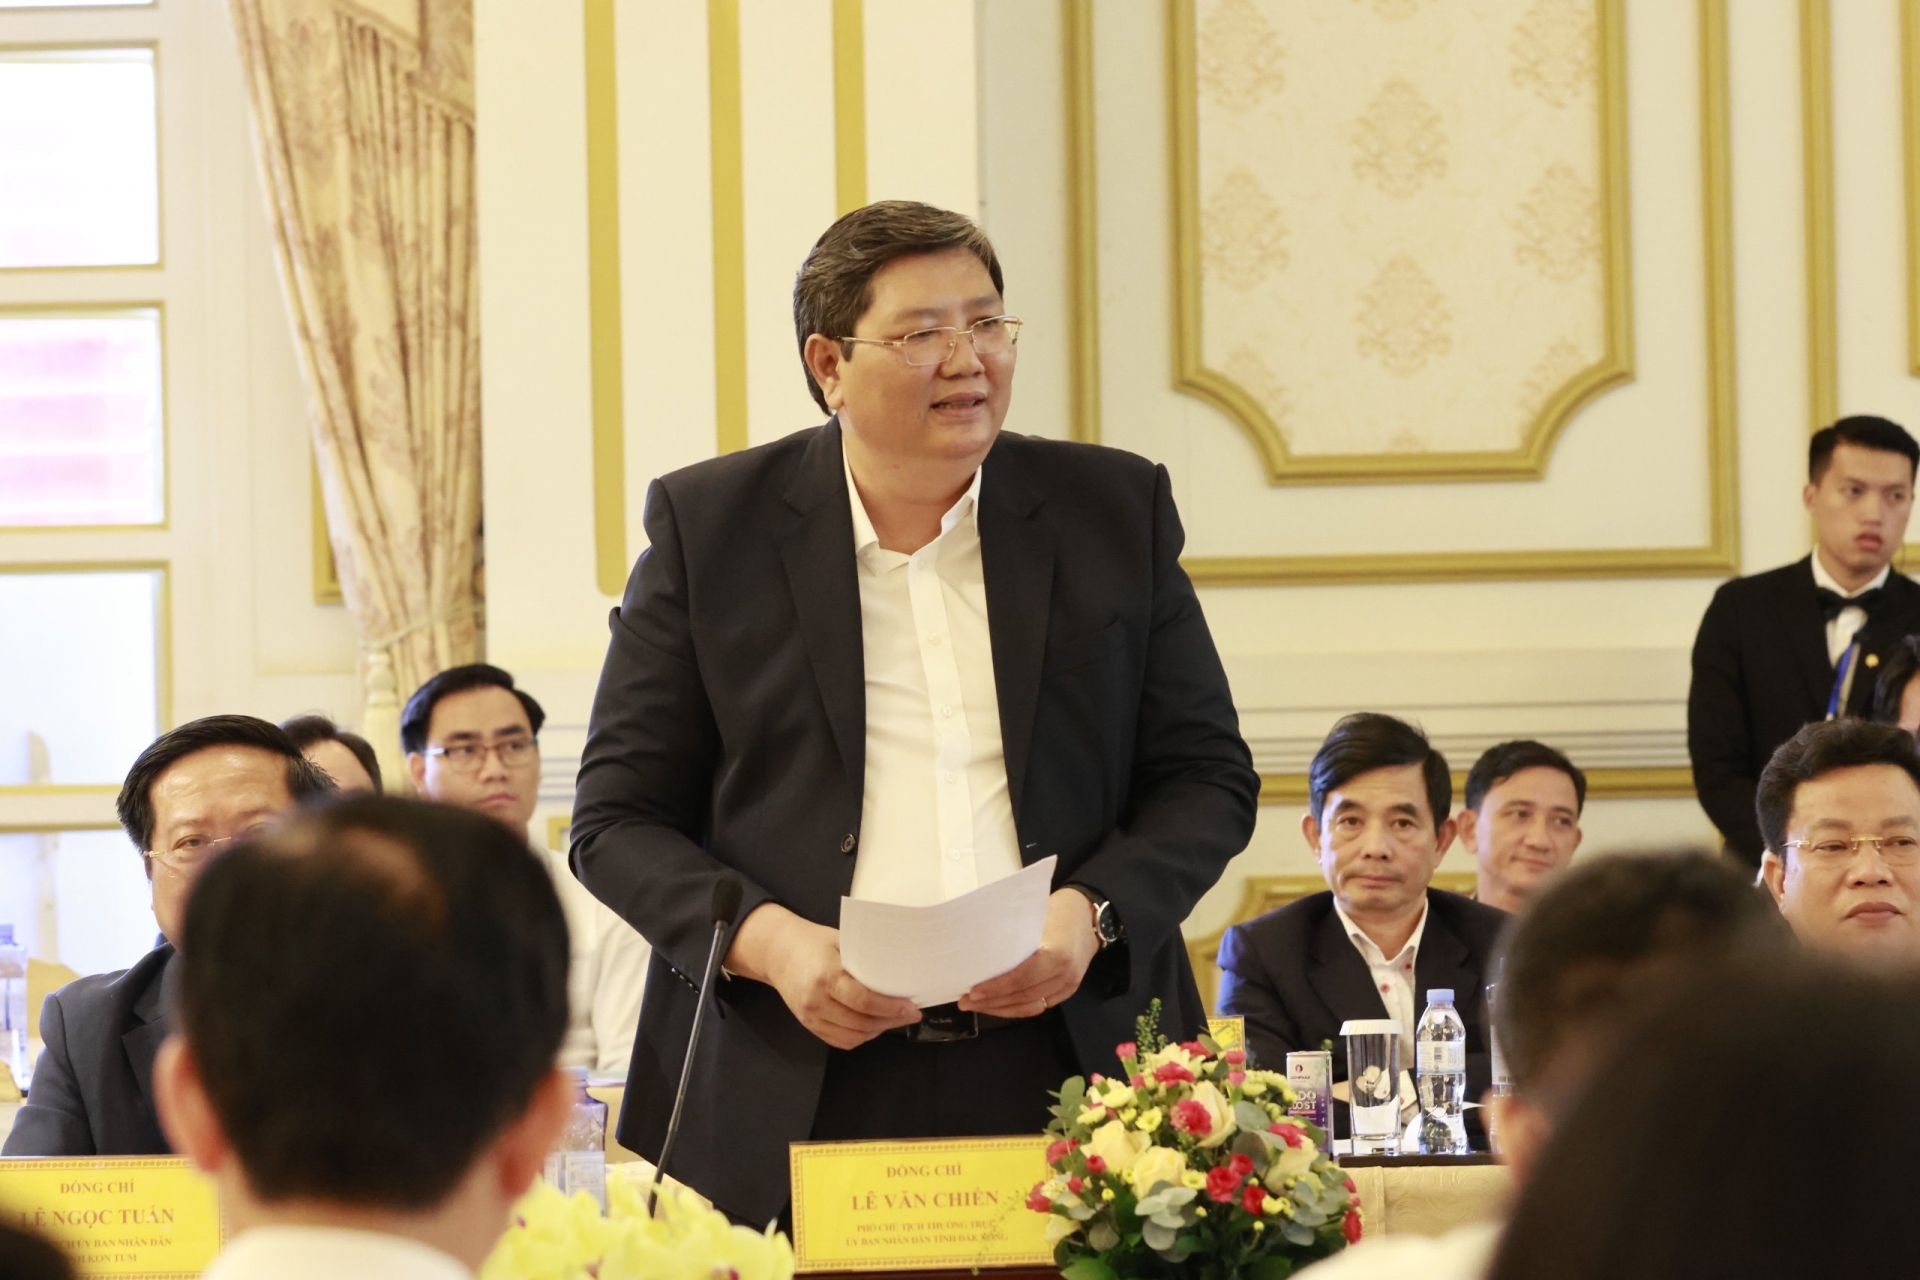 Phó Chủ tịch UBND tỉnh Đắk Nông Lê Văn Chiến báo cáo tại Hội nghị